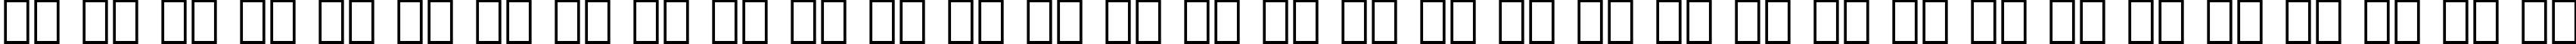 Пример написания русского алфавита шрифтом Folio Extra Bold BT